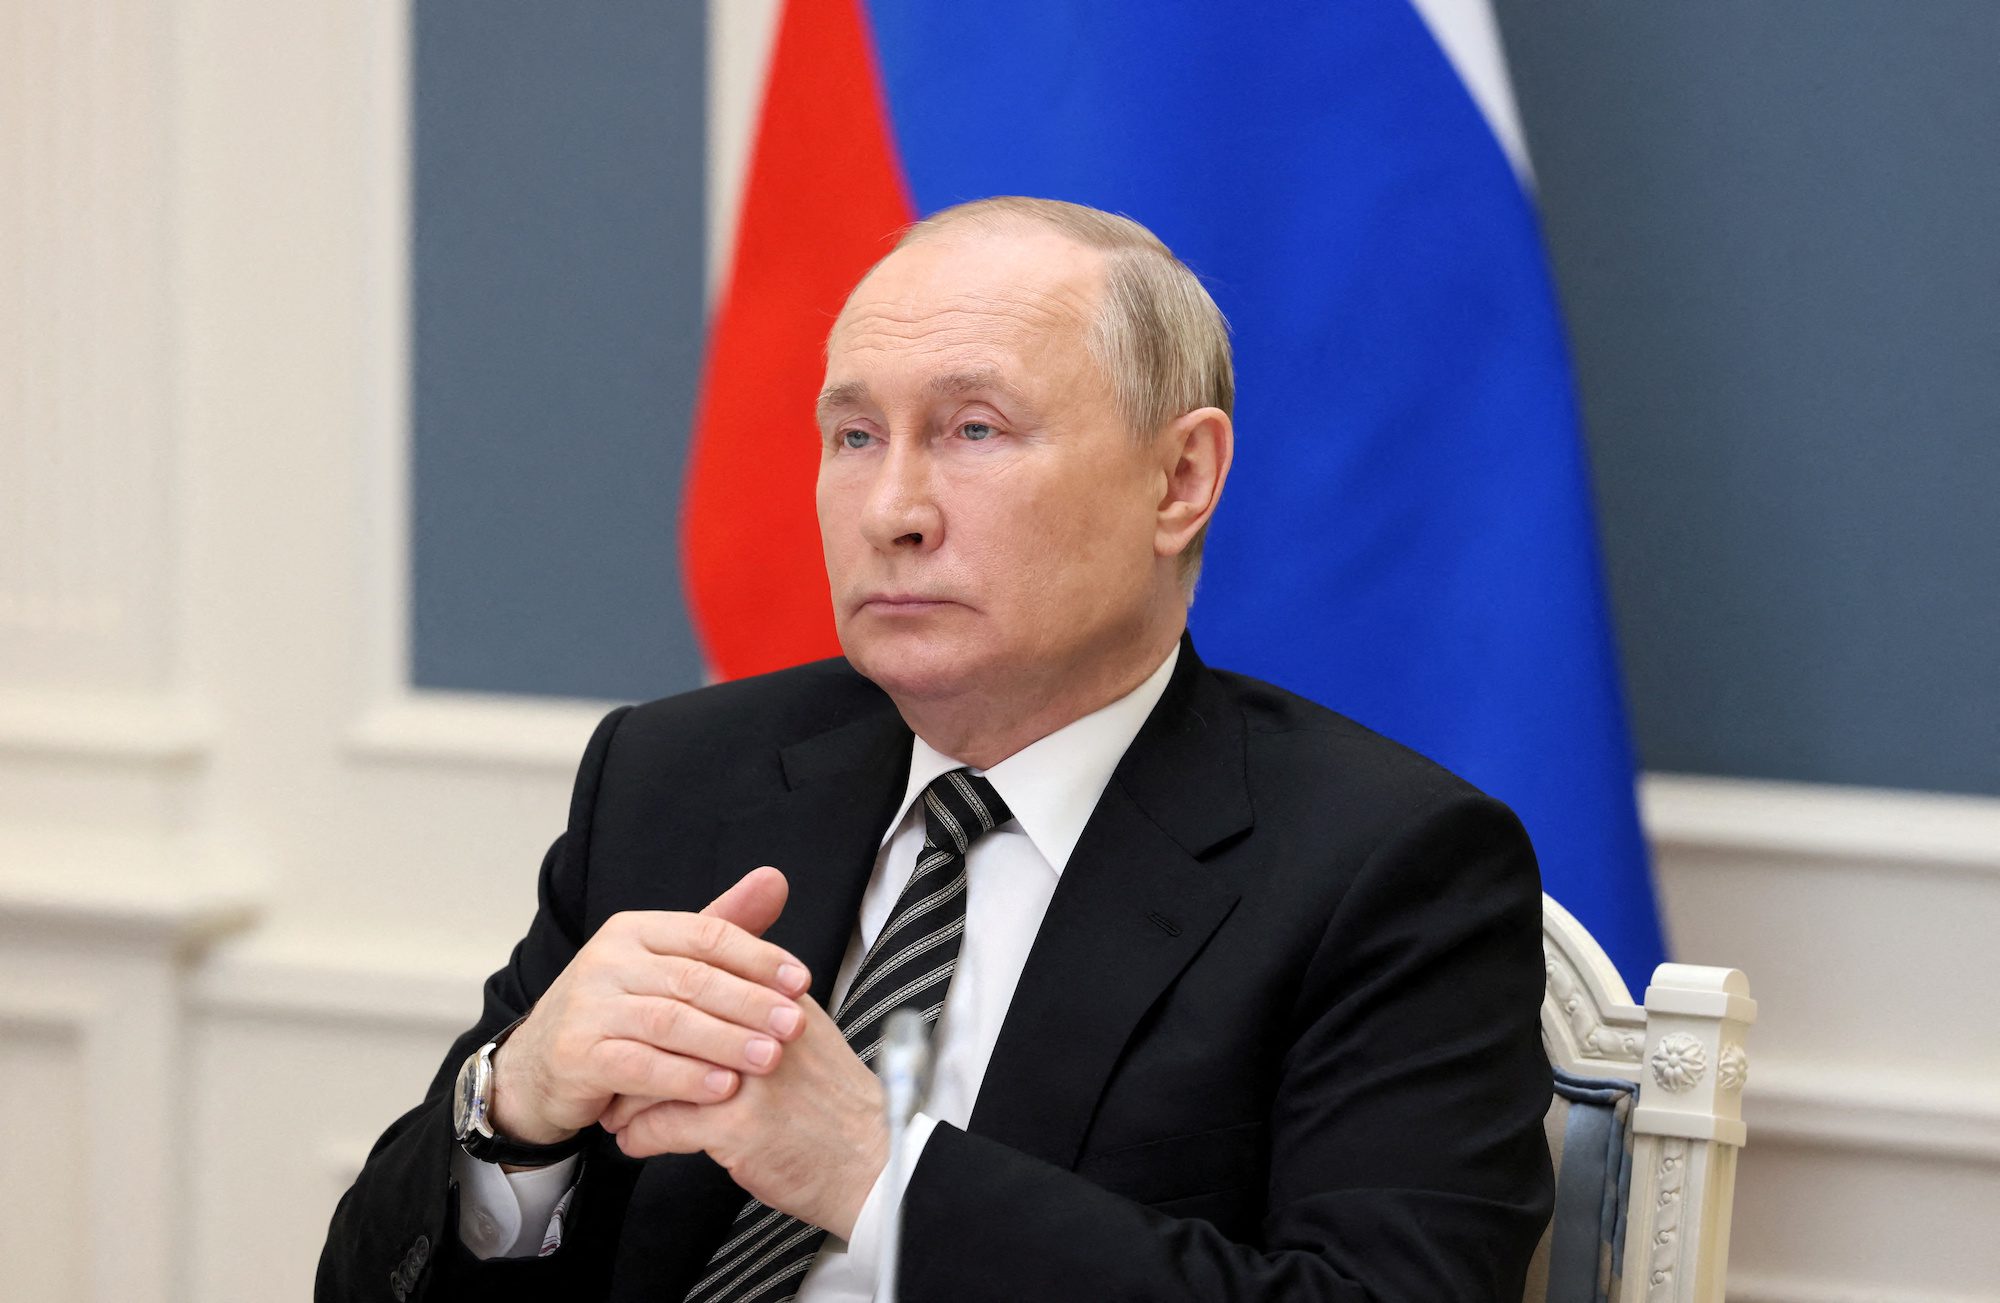 Russian President Vladimir Putin attends a meeting